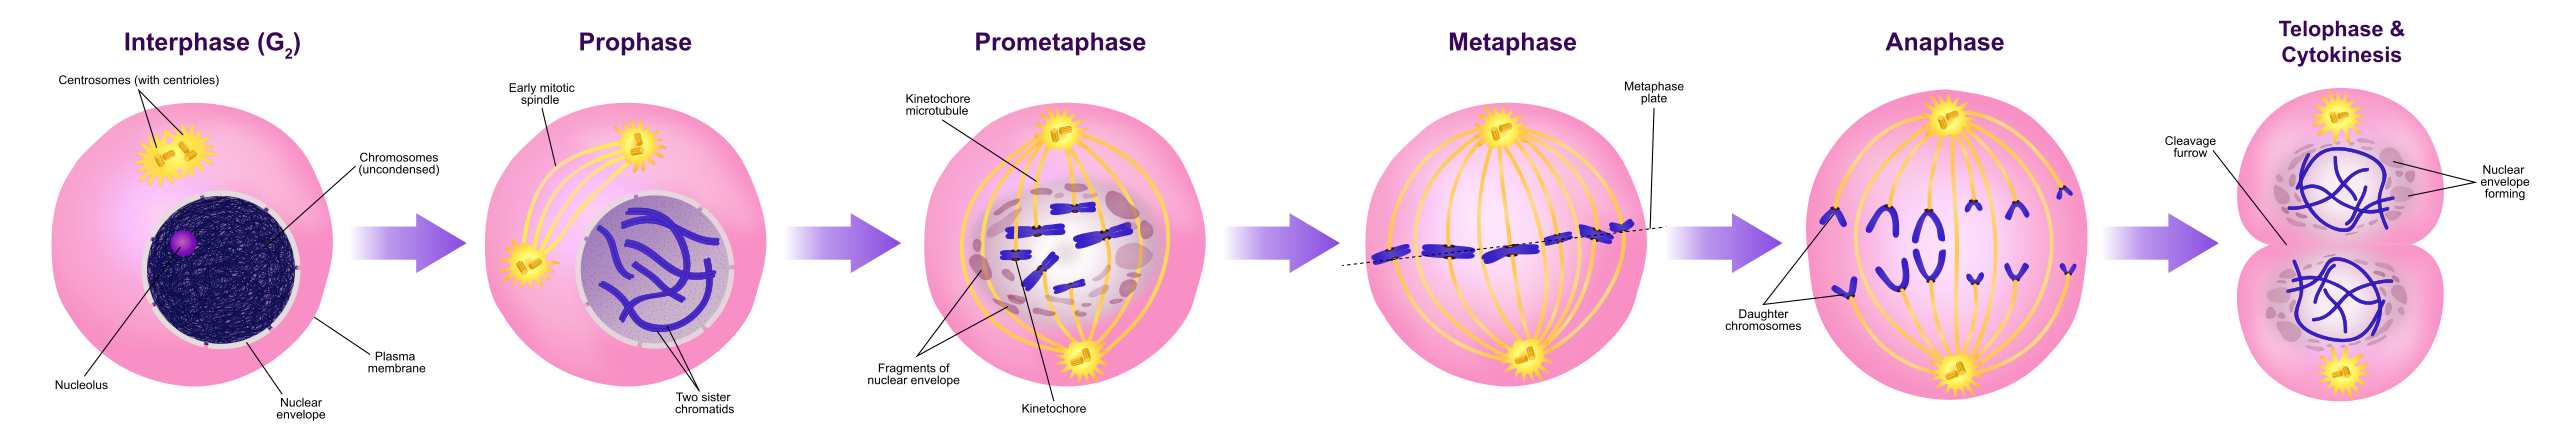 cytokinesis of mitosis diagram